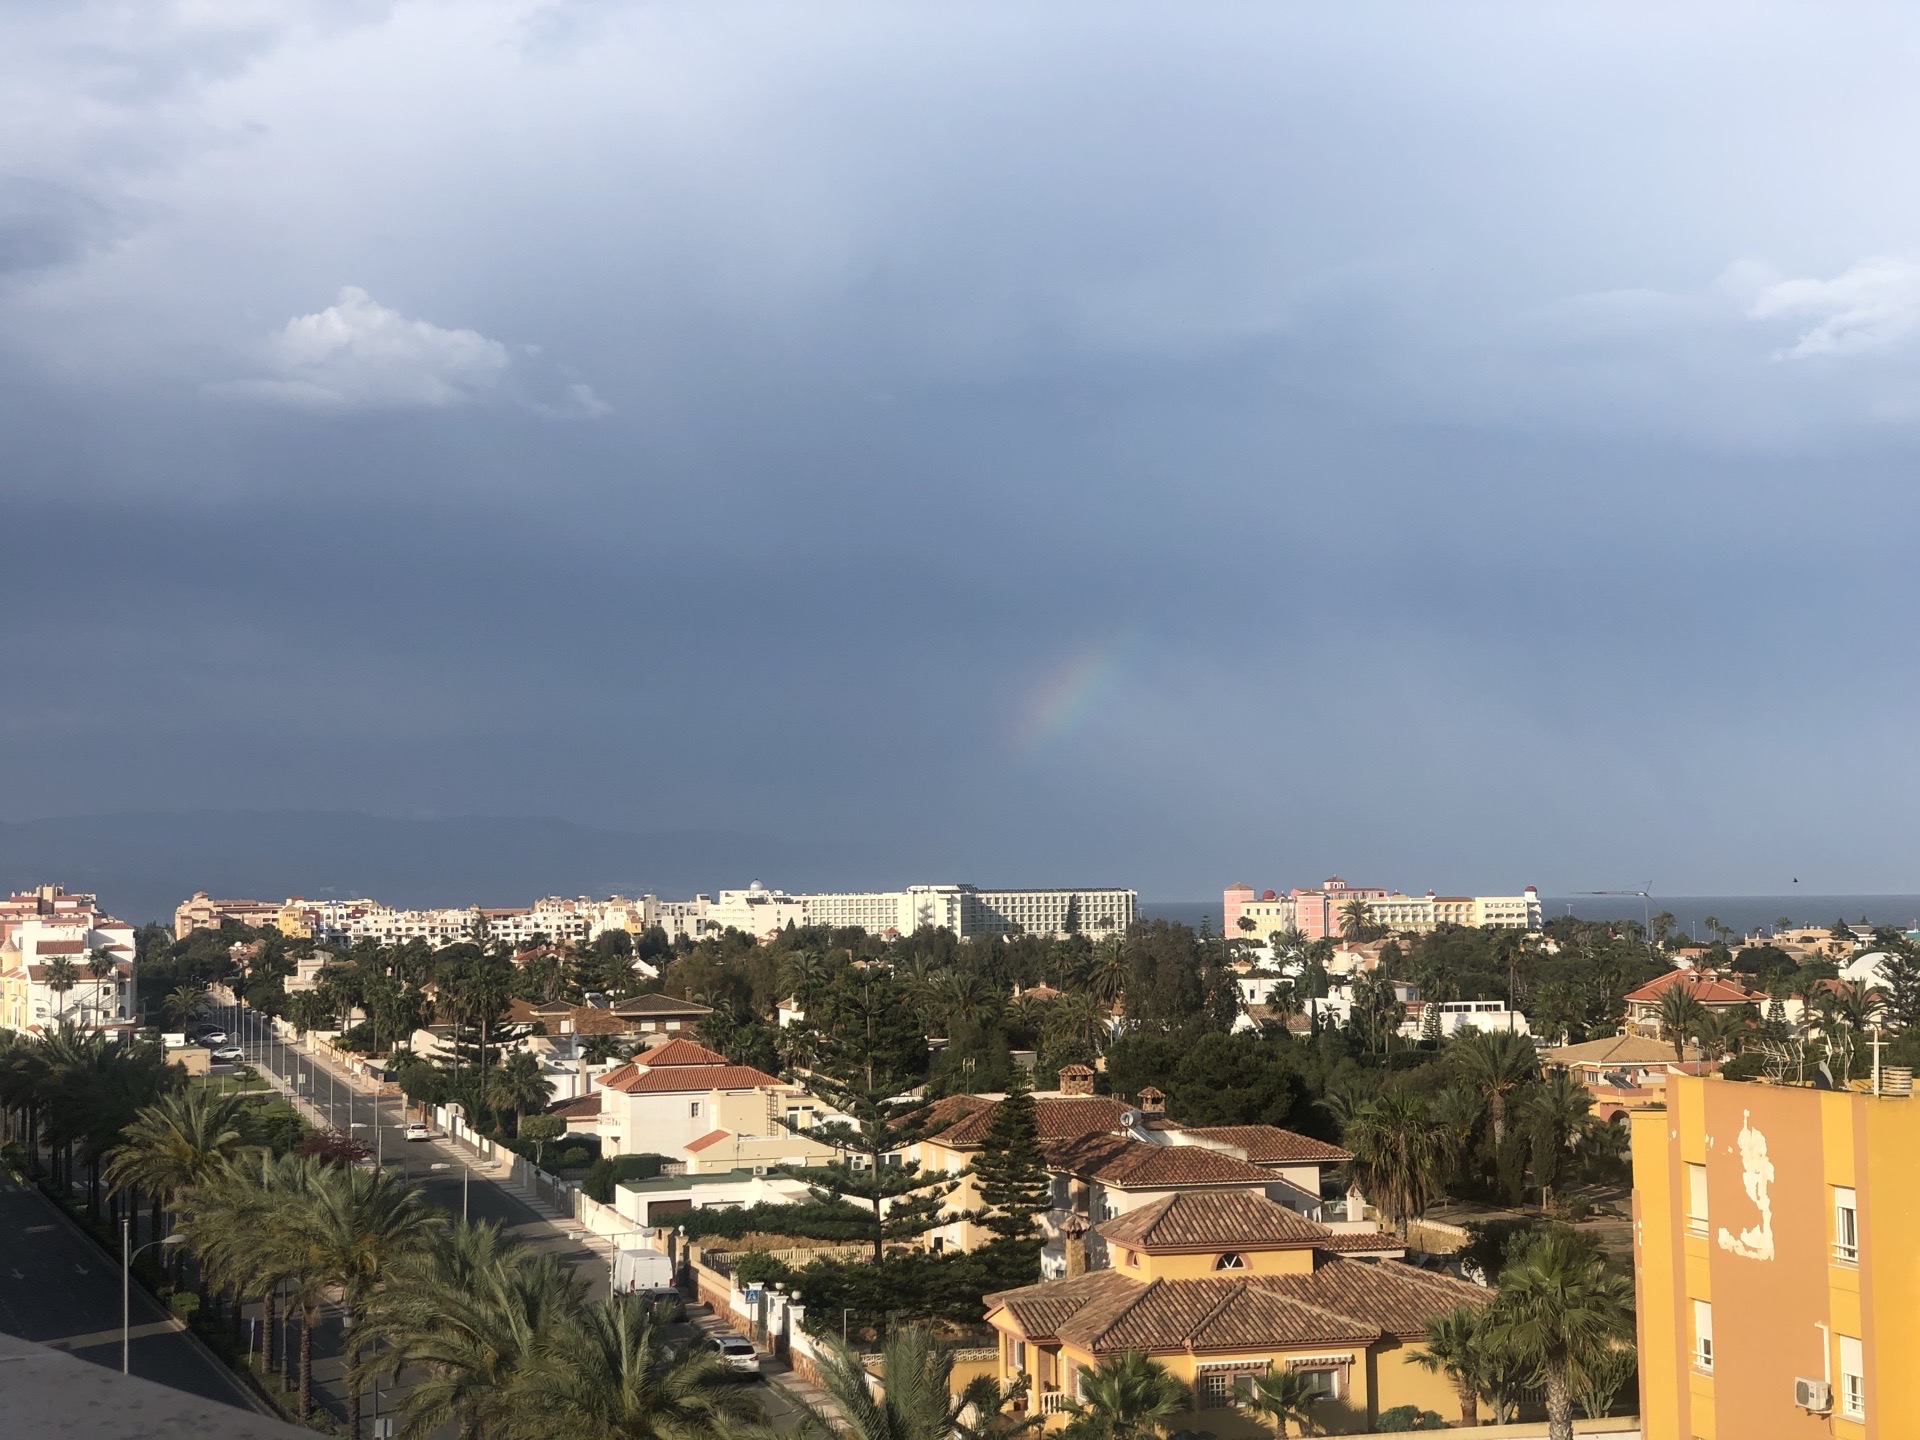 整个四月都在西班牙，每天的旅游计划就是起床客厅和阳台。今天竟然发现被晒黑了。 雨过天晴出彩虹。整个城